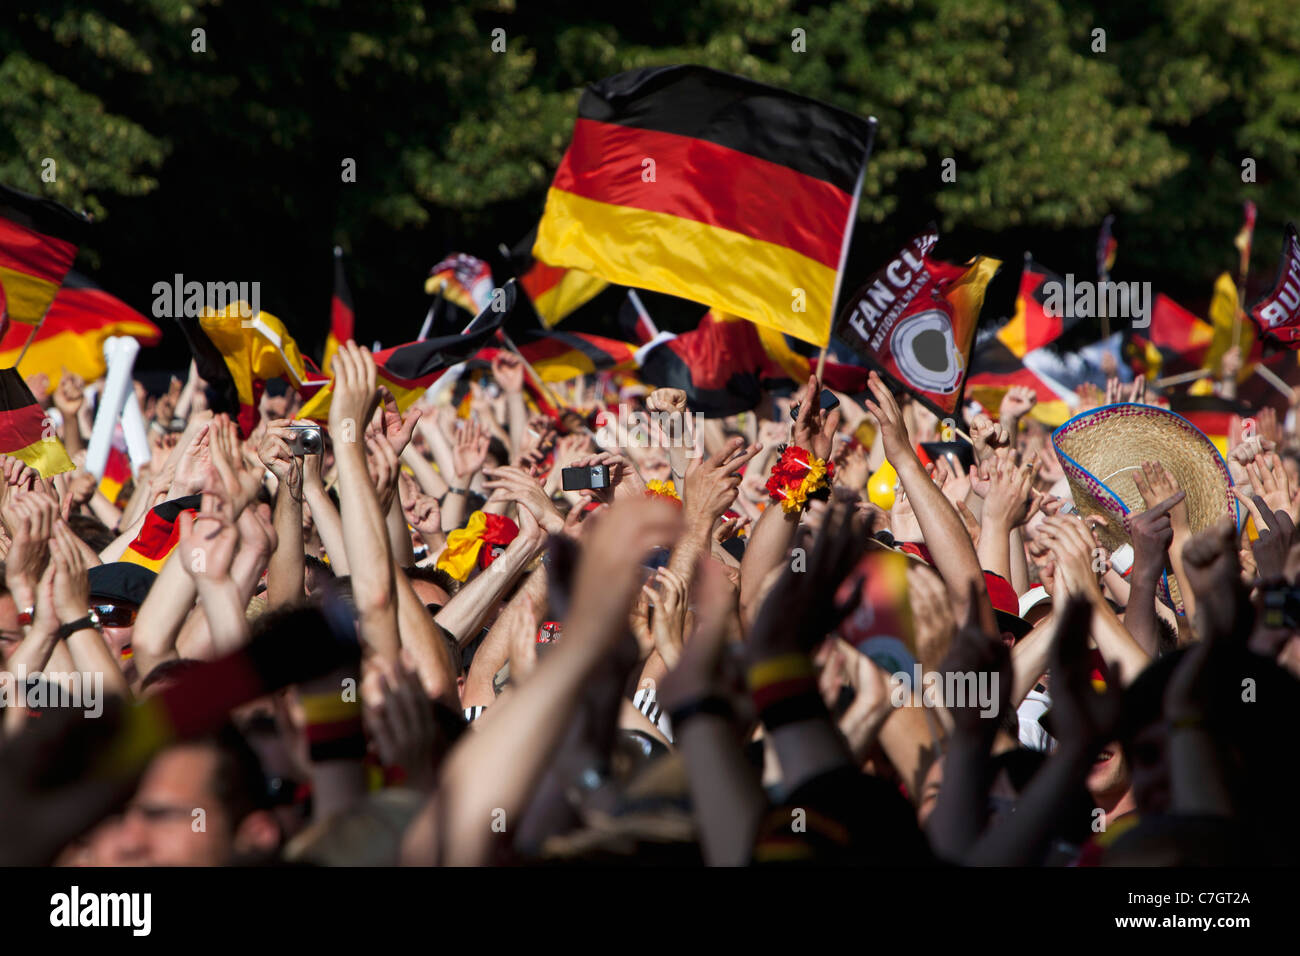 Dettaglio delle persone in una folla sventolando bandiere tedesco Foto Stock